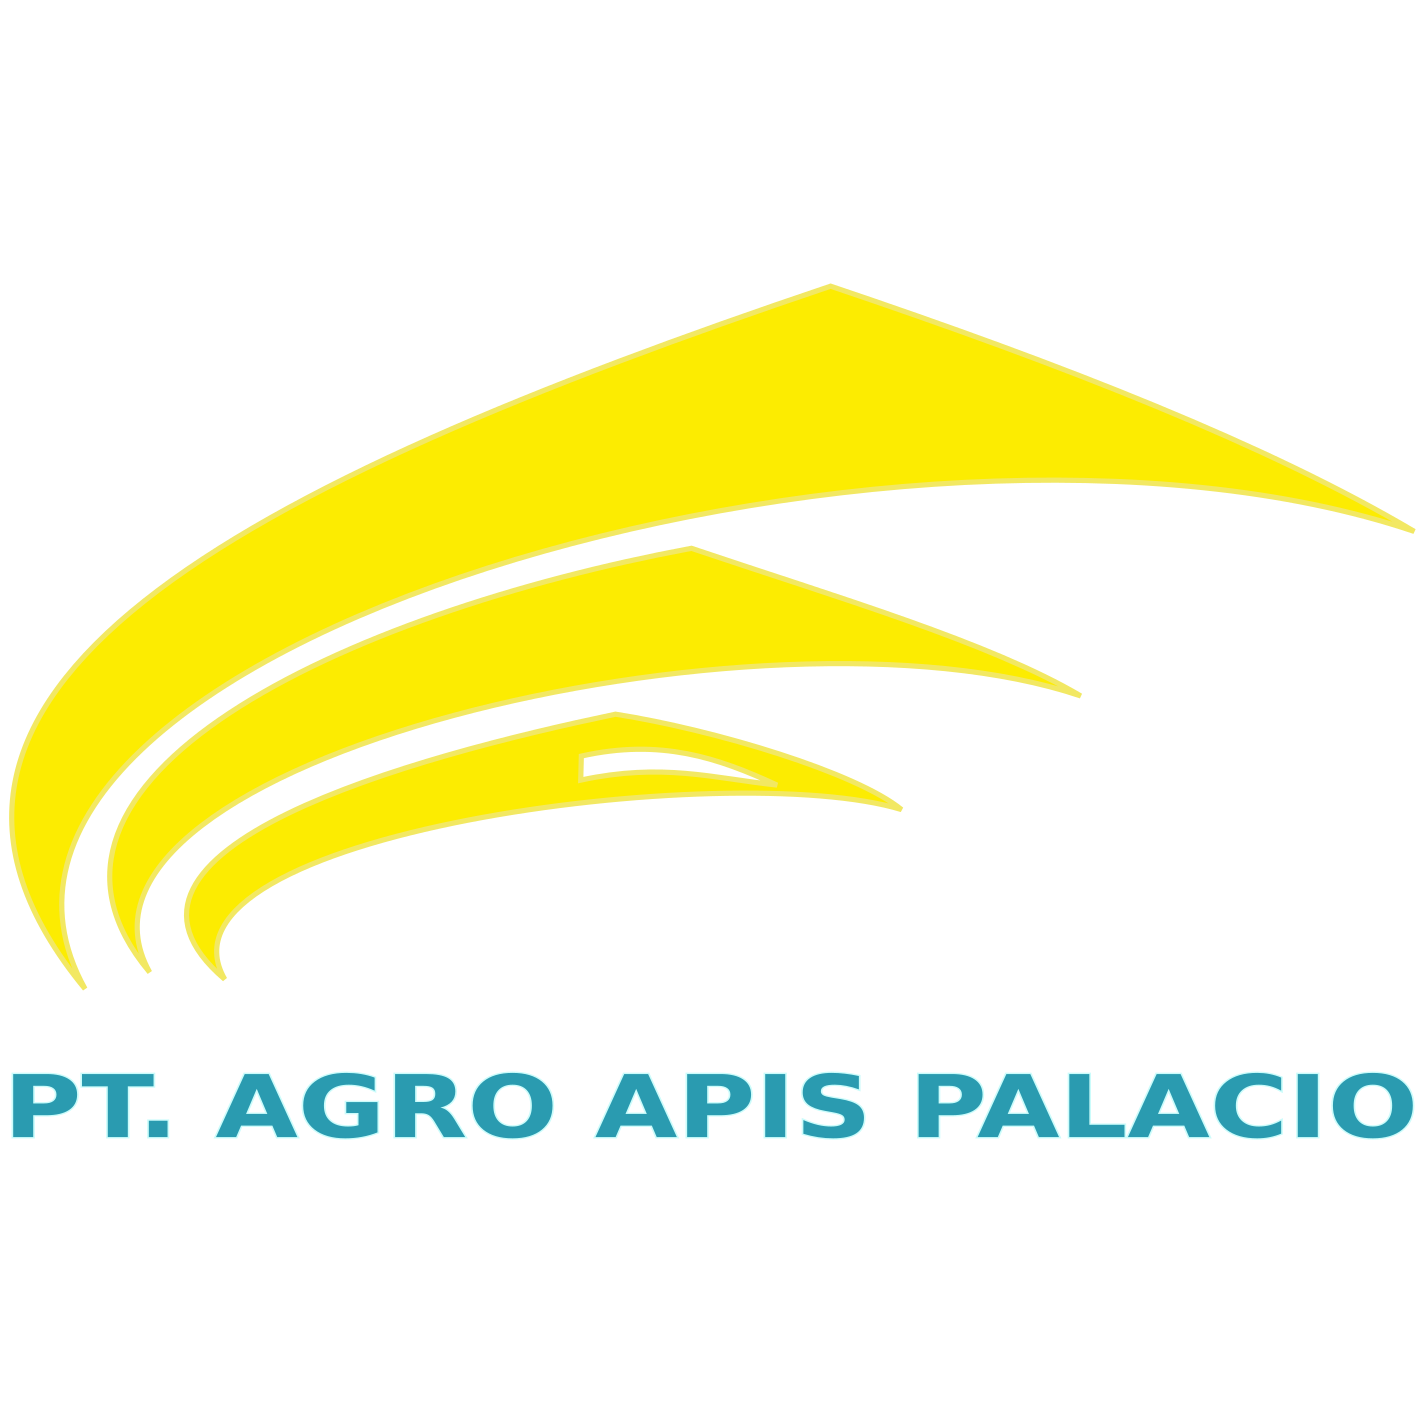 PT. AGRO APIS PALACIO